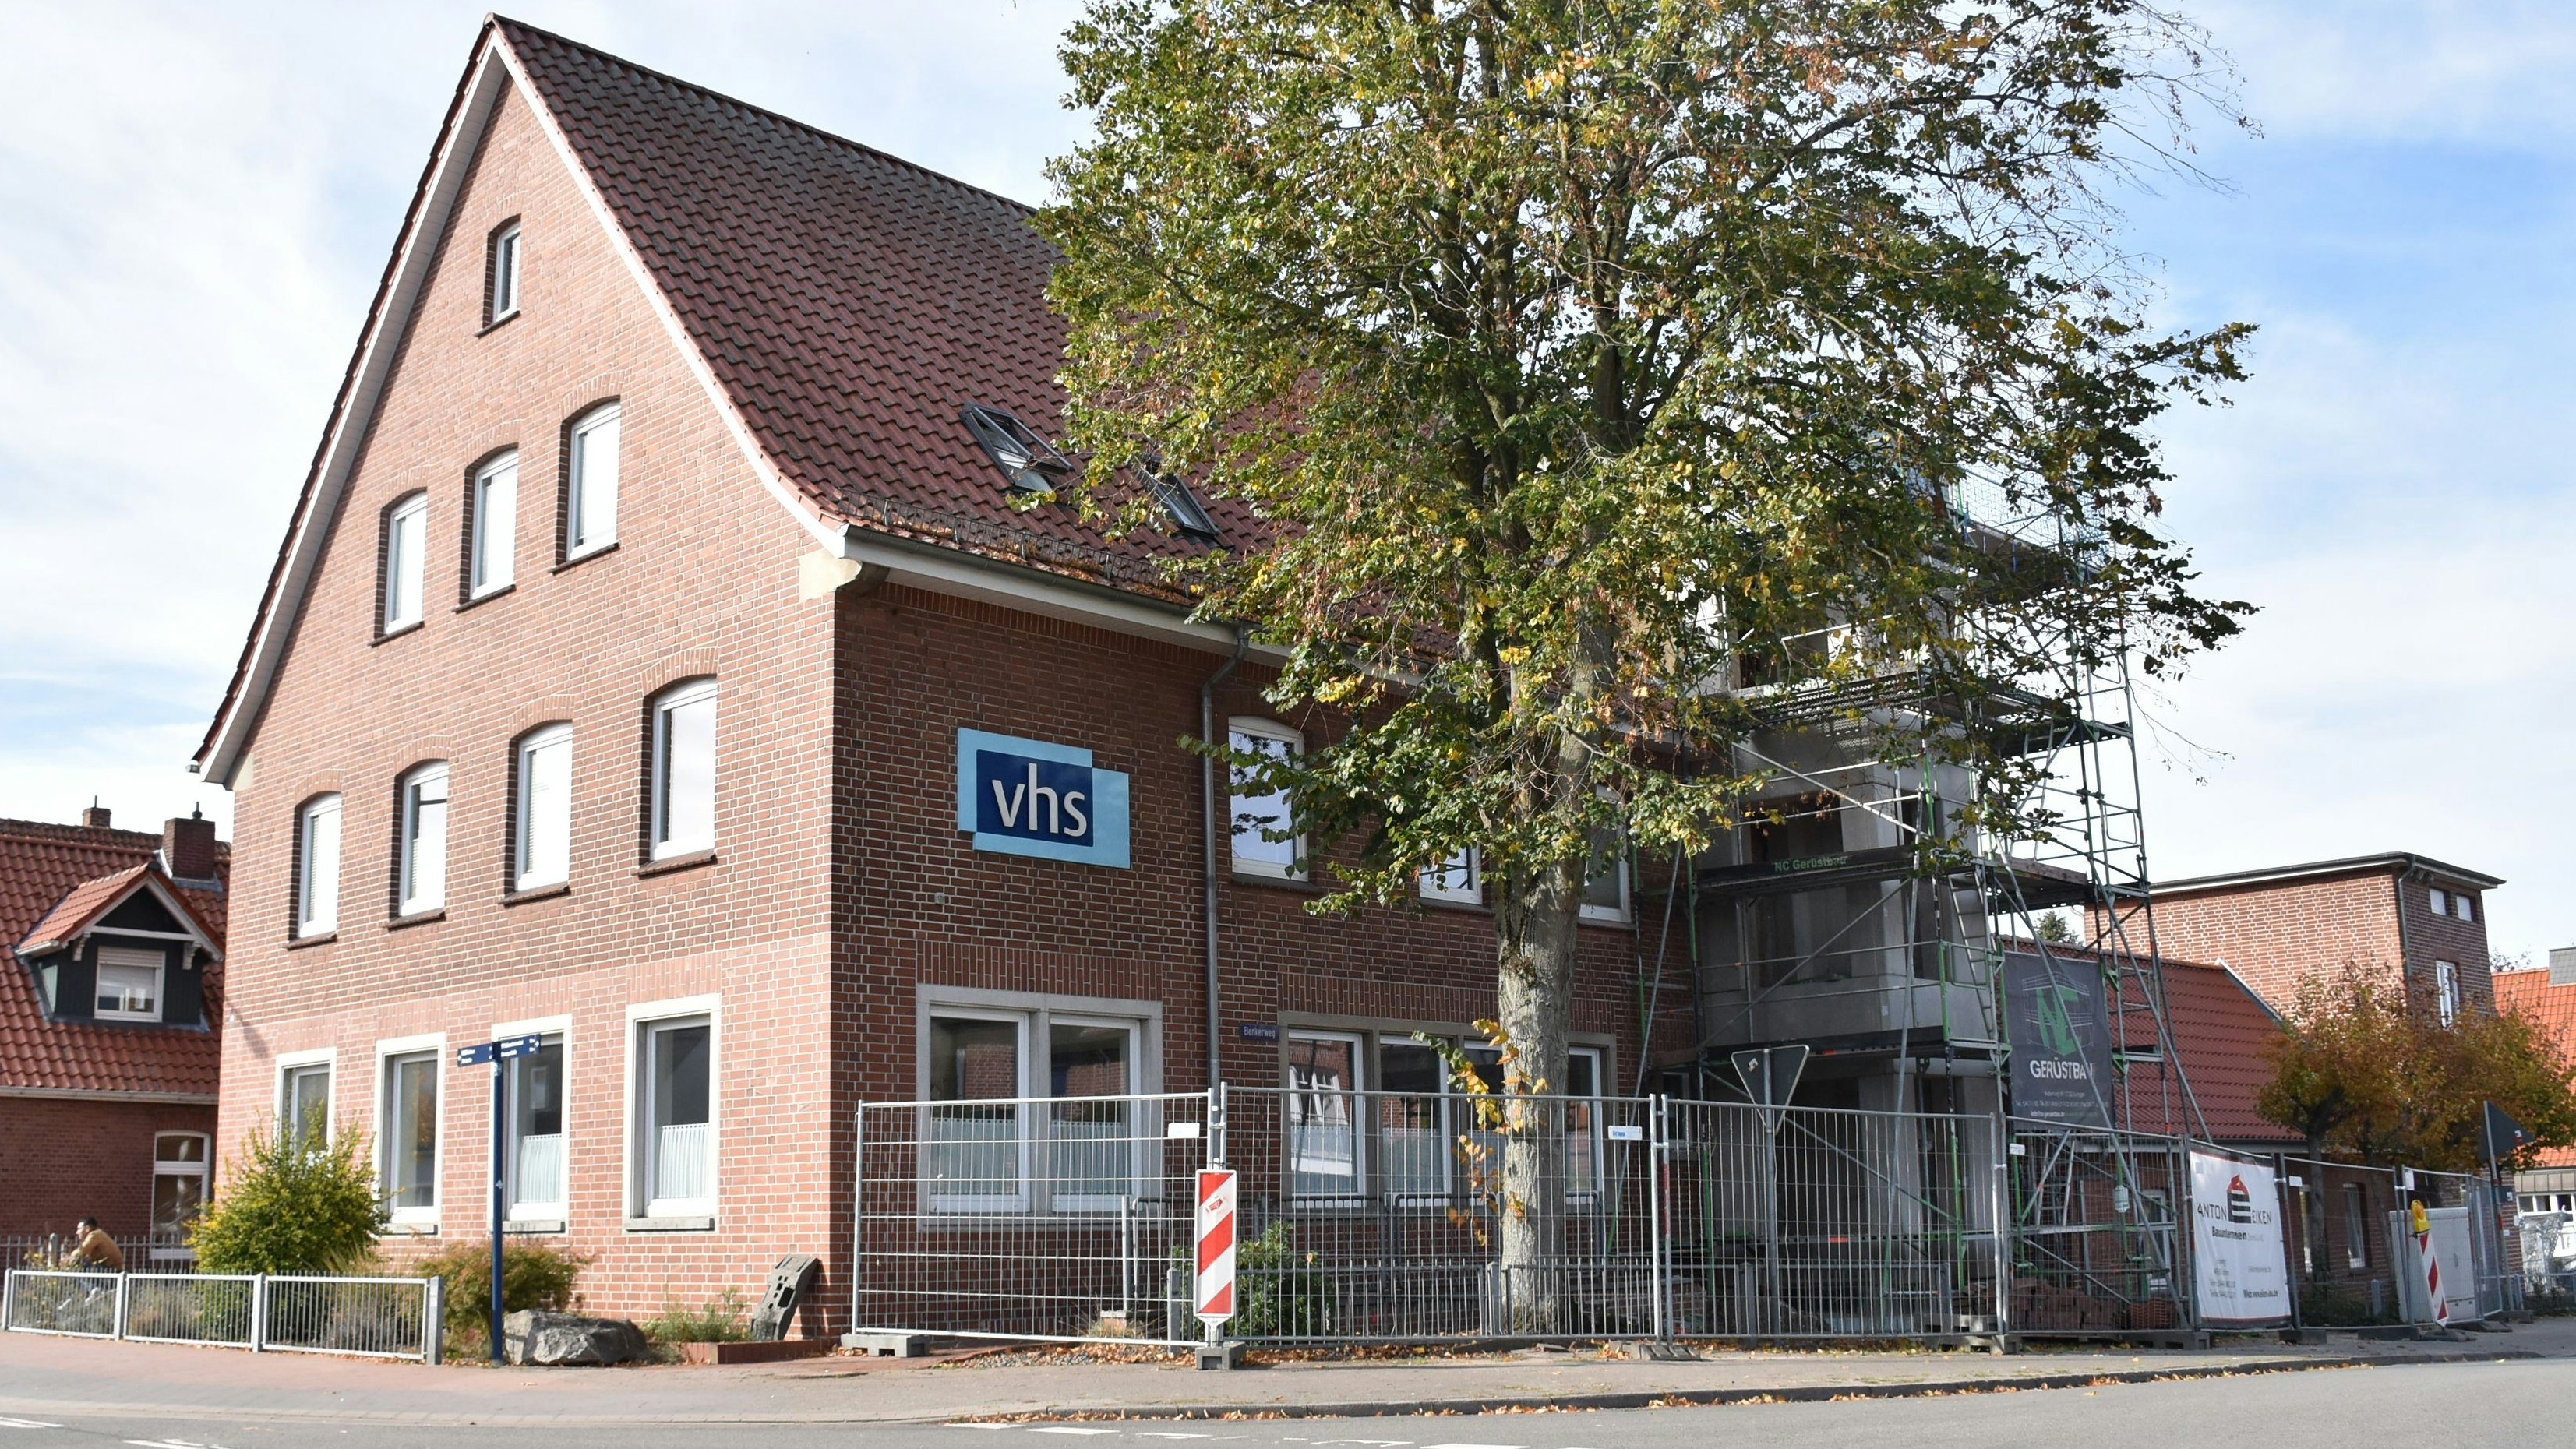 Die Kreisvolkshochschule Vechta betreibt eine Außenstelle an der Lindenstraße in Lohne. Das Gebäude wird aktuell ausgebaut und saniert. Da sich die Kosten erhöht haben, hat die Einrichtung einen Zuschuss bei der Stadt Lohne beantragt. Foto: Timphaus